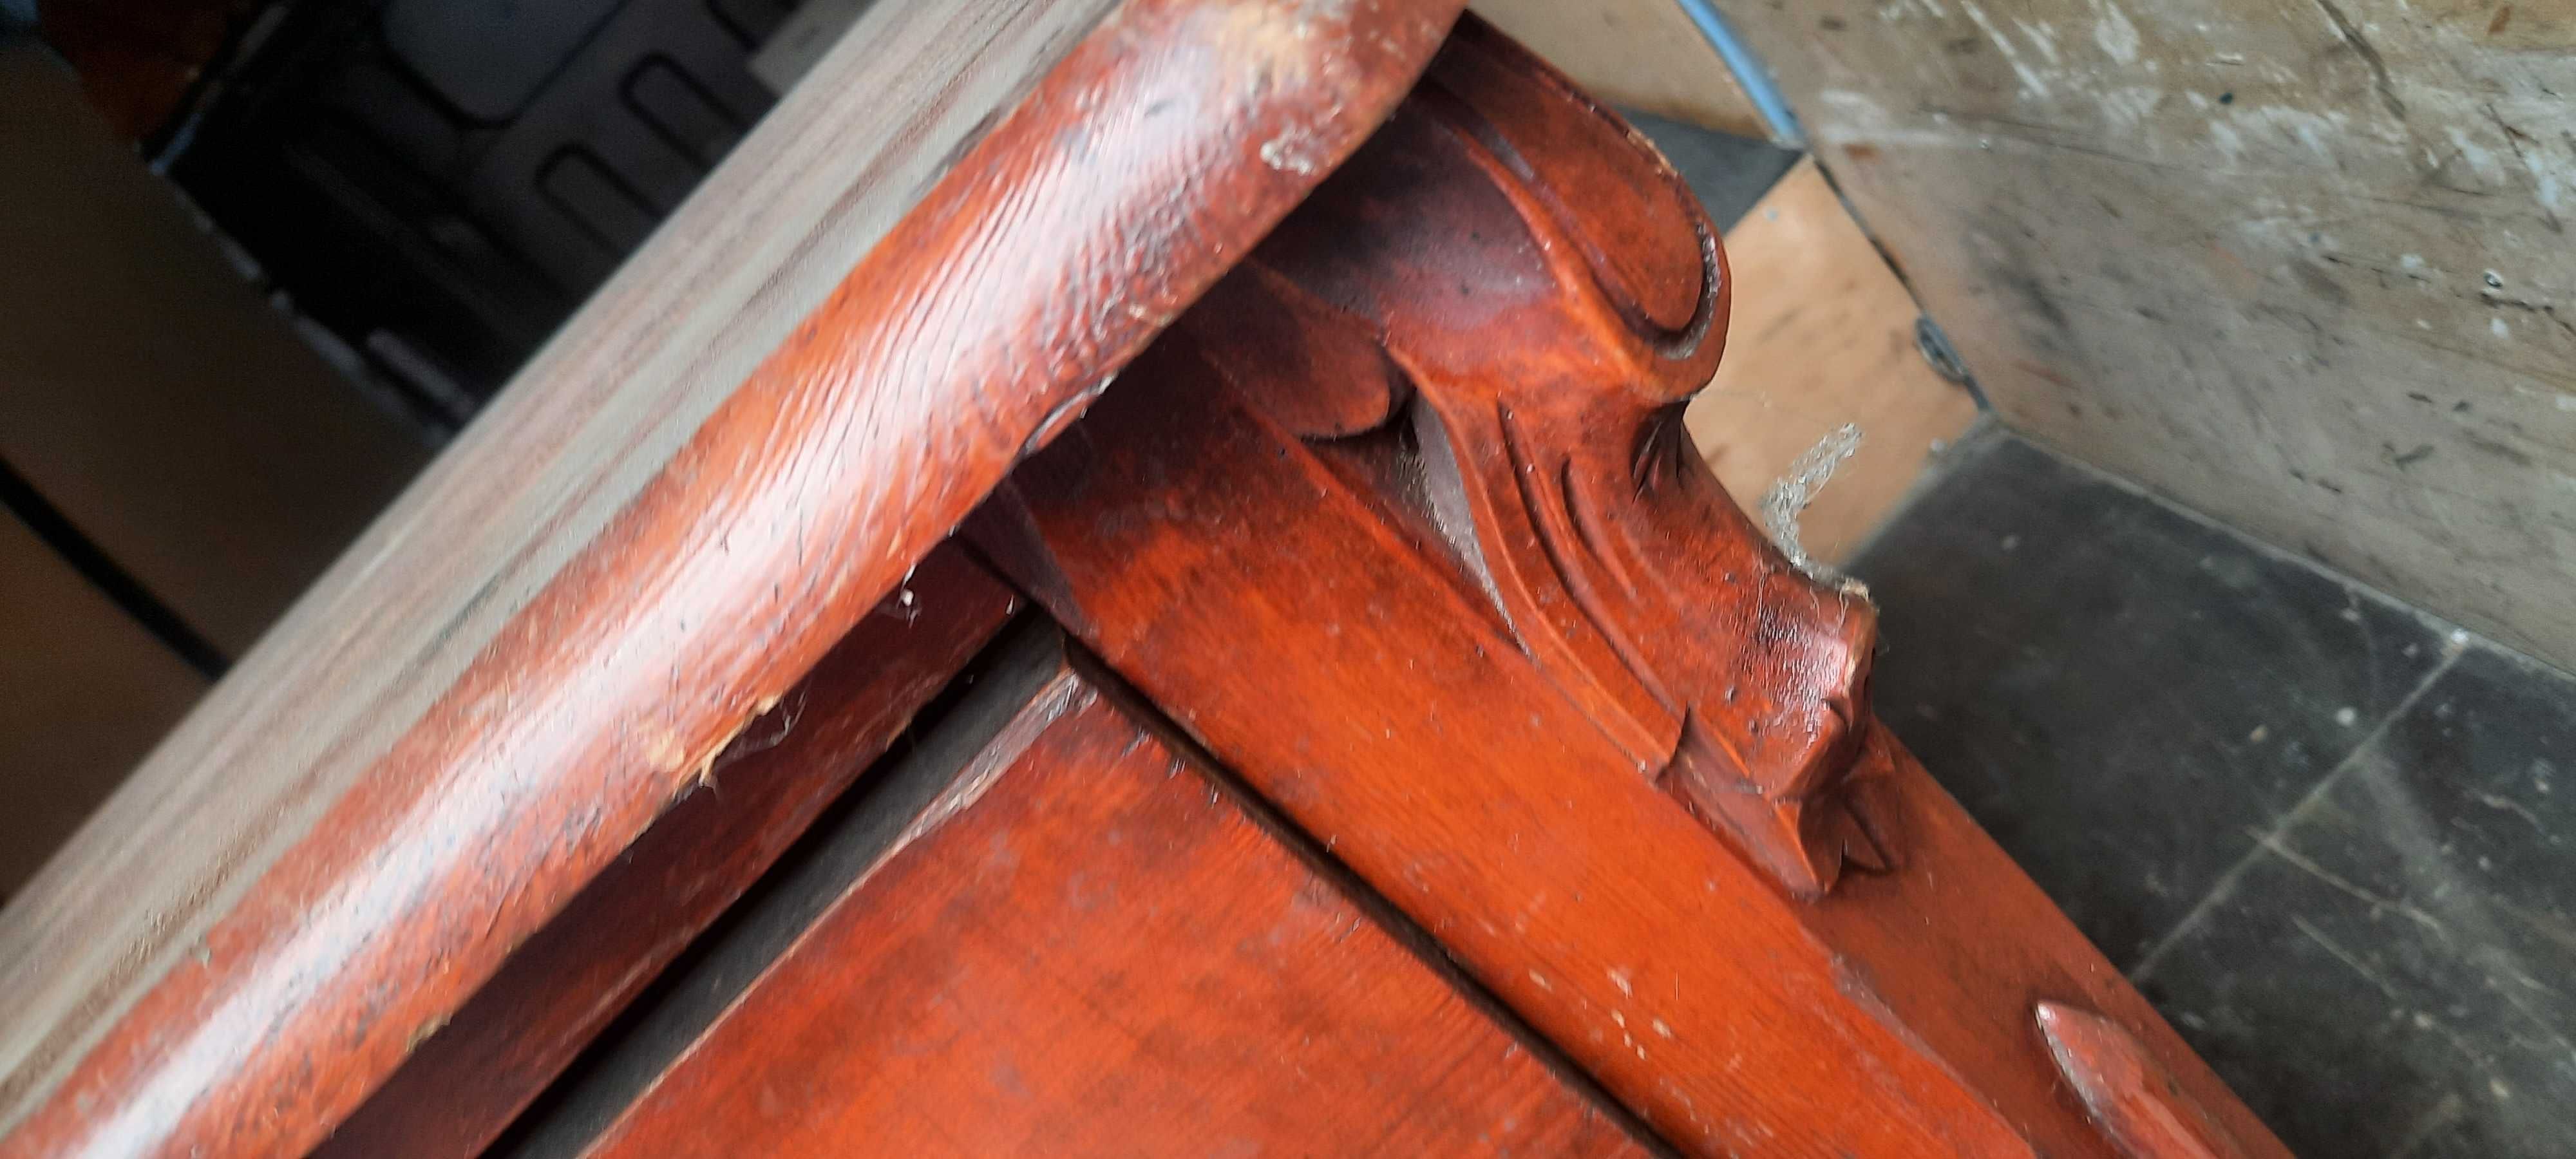 Stara drewniana komoda do renowacji